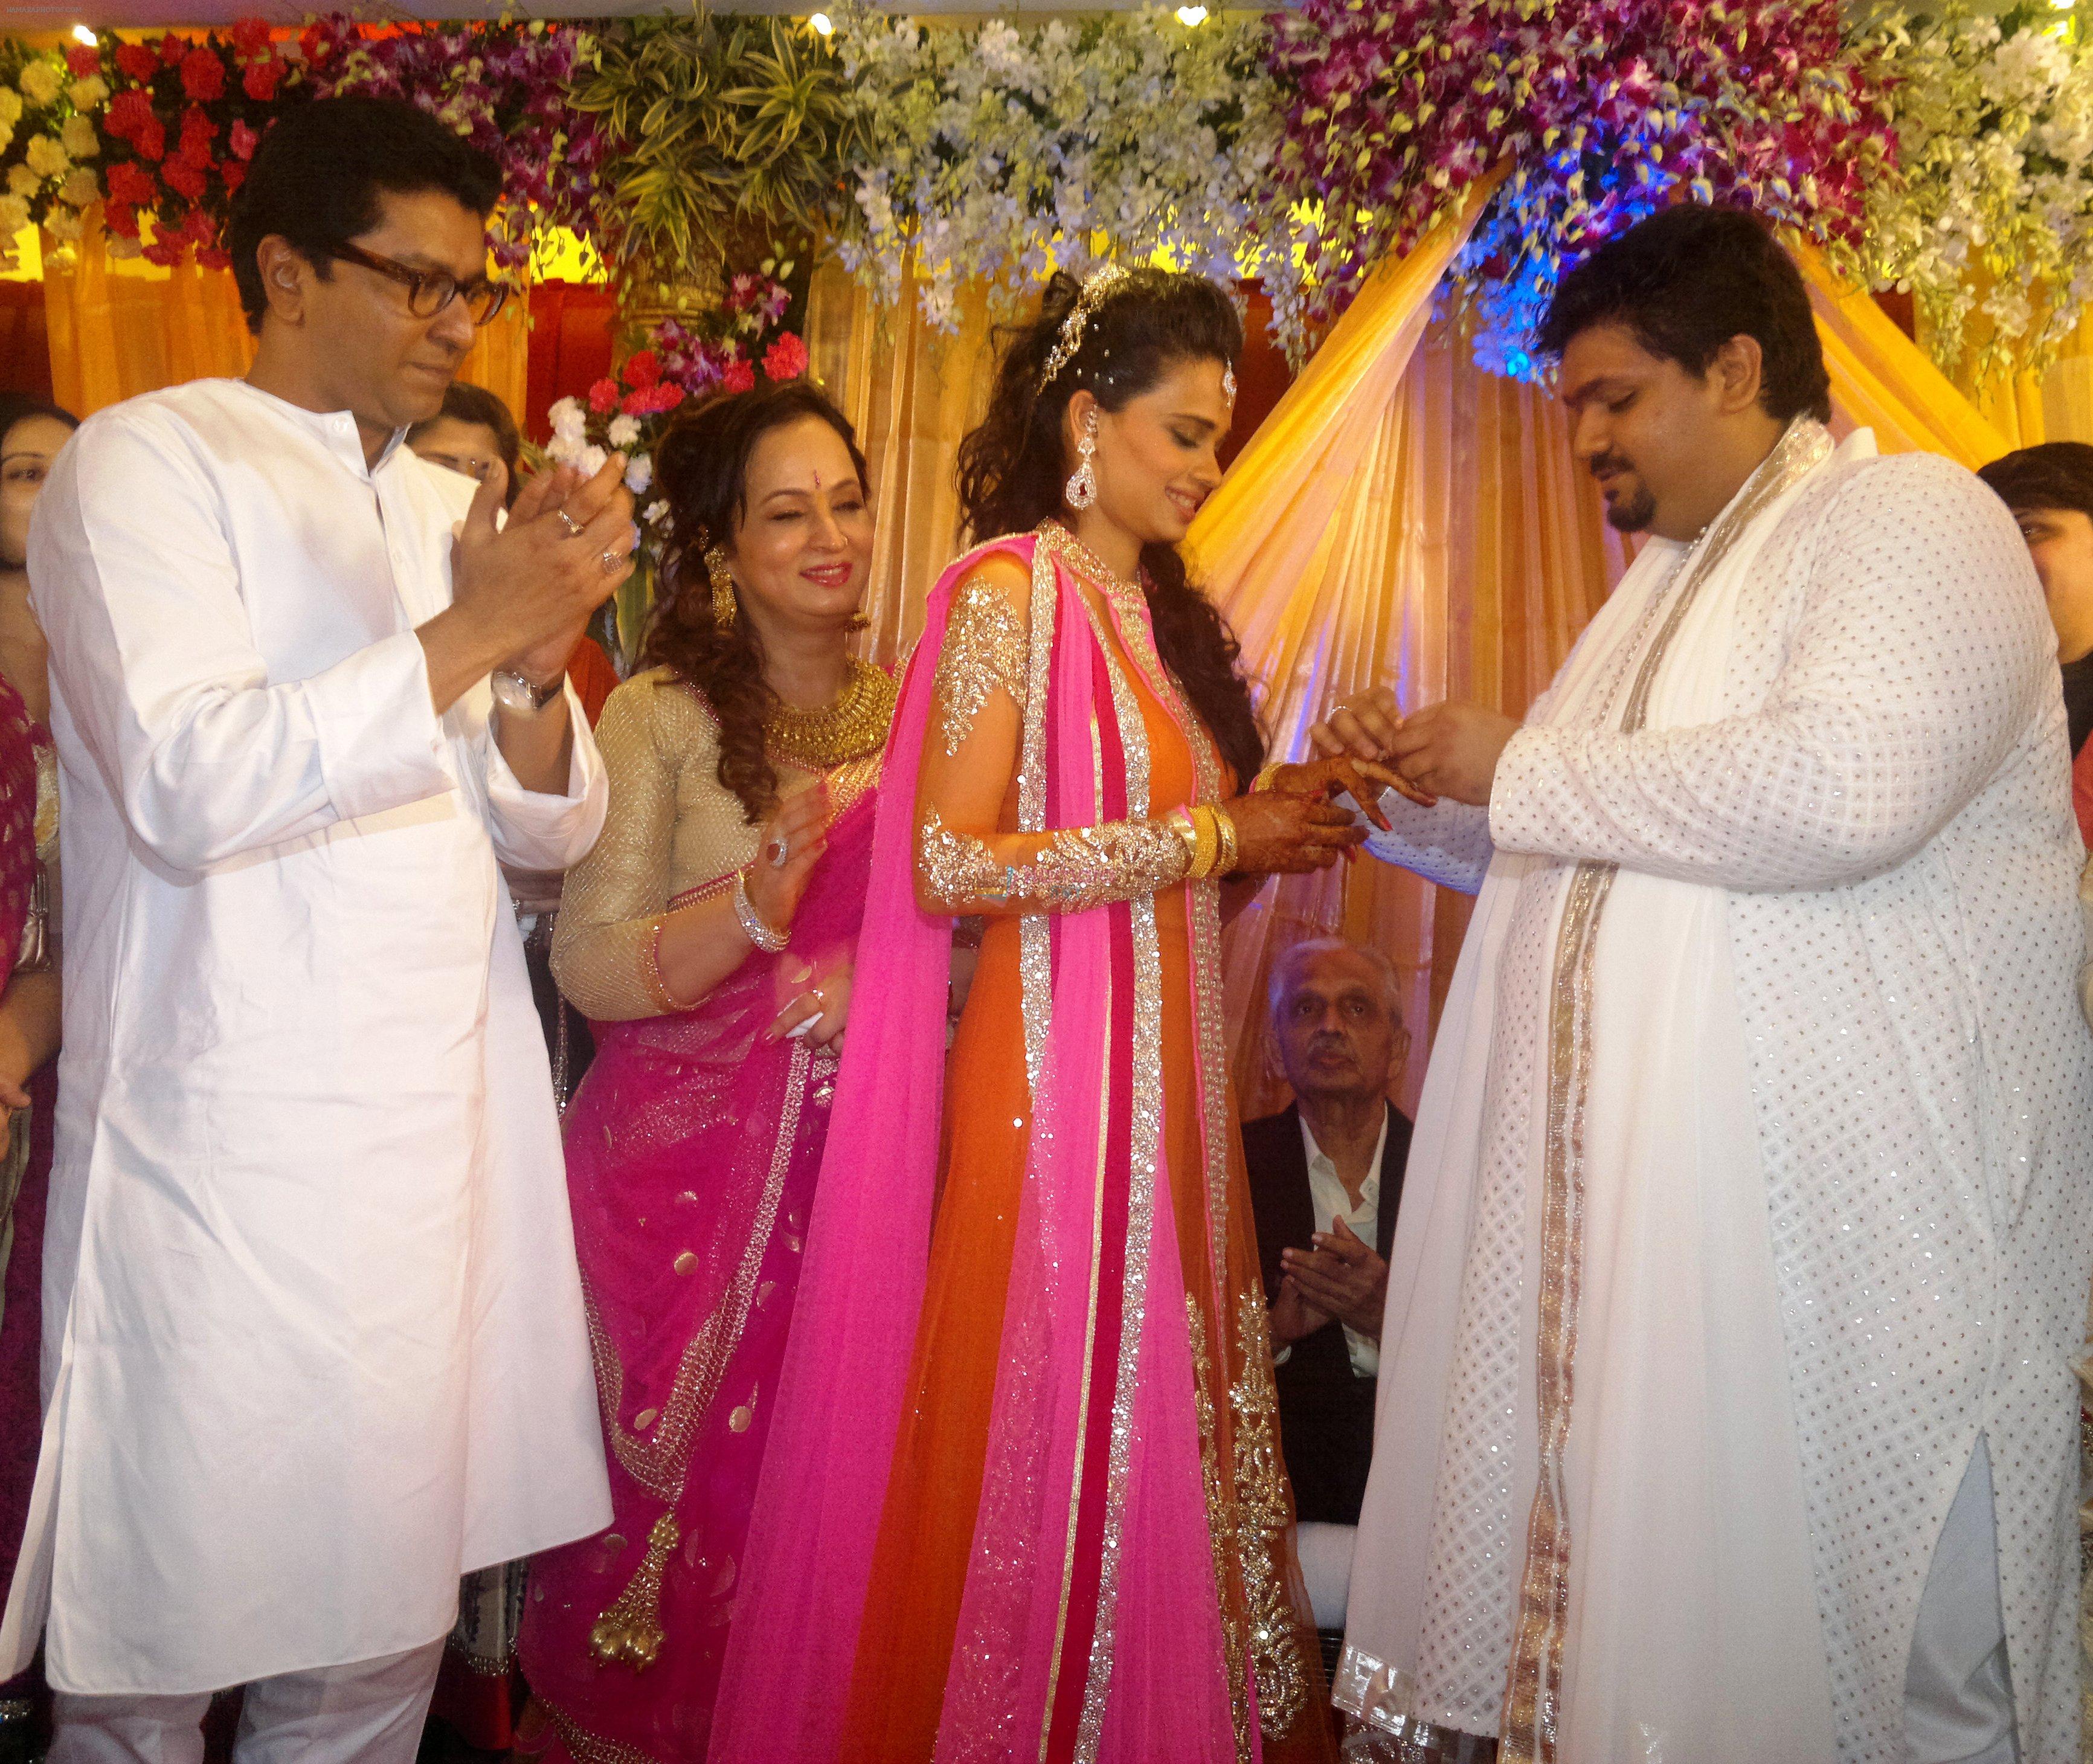 raj thackeray, smita thackeray, aditi redkar and rahul thackeray at aditi and rahul's engagement